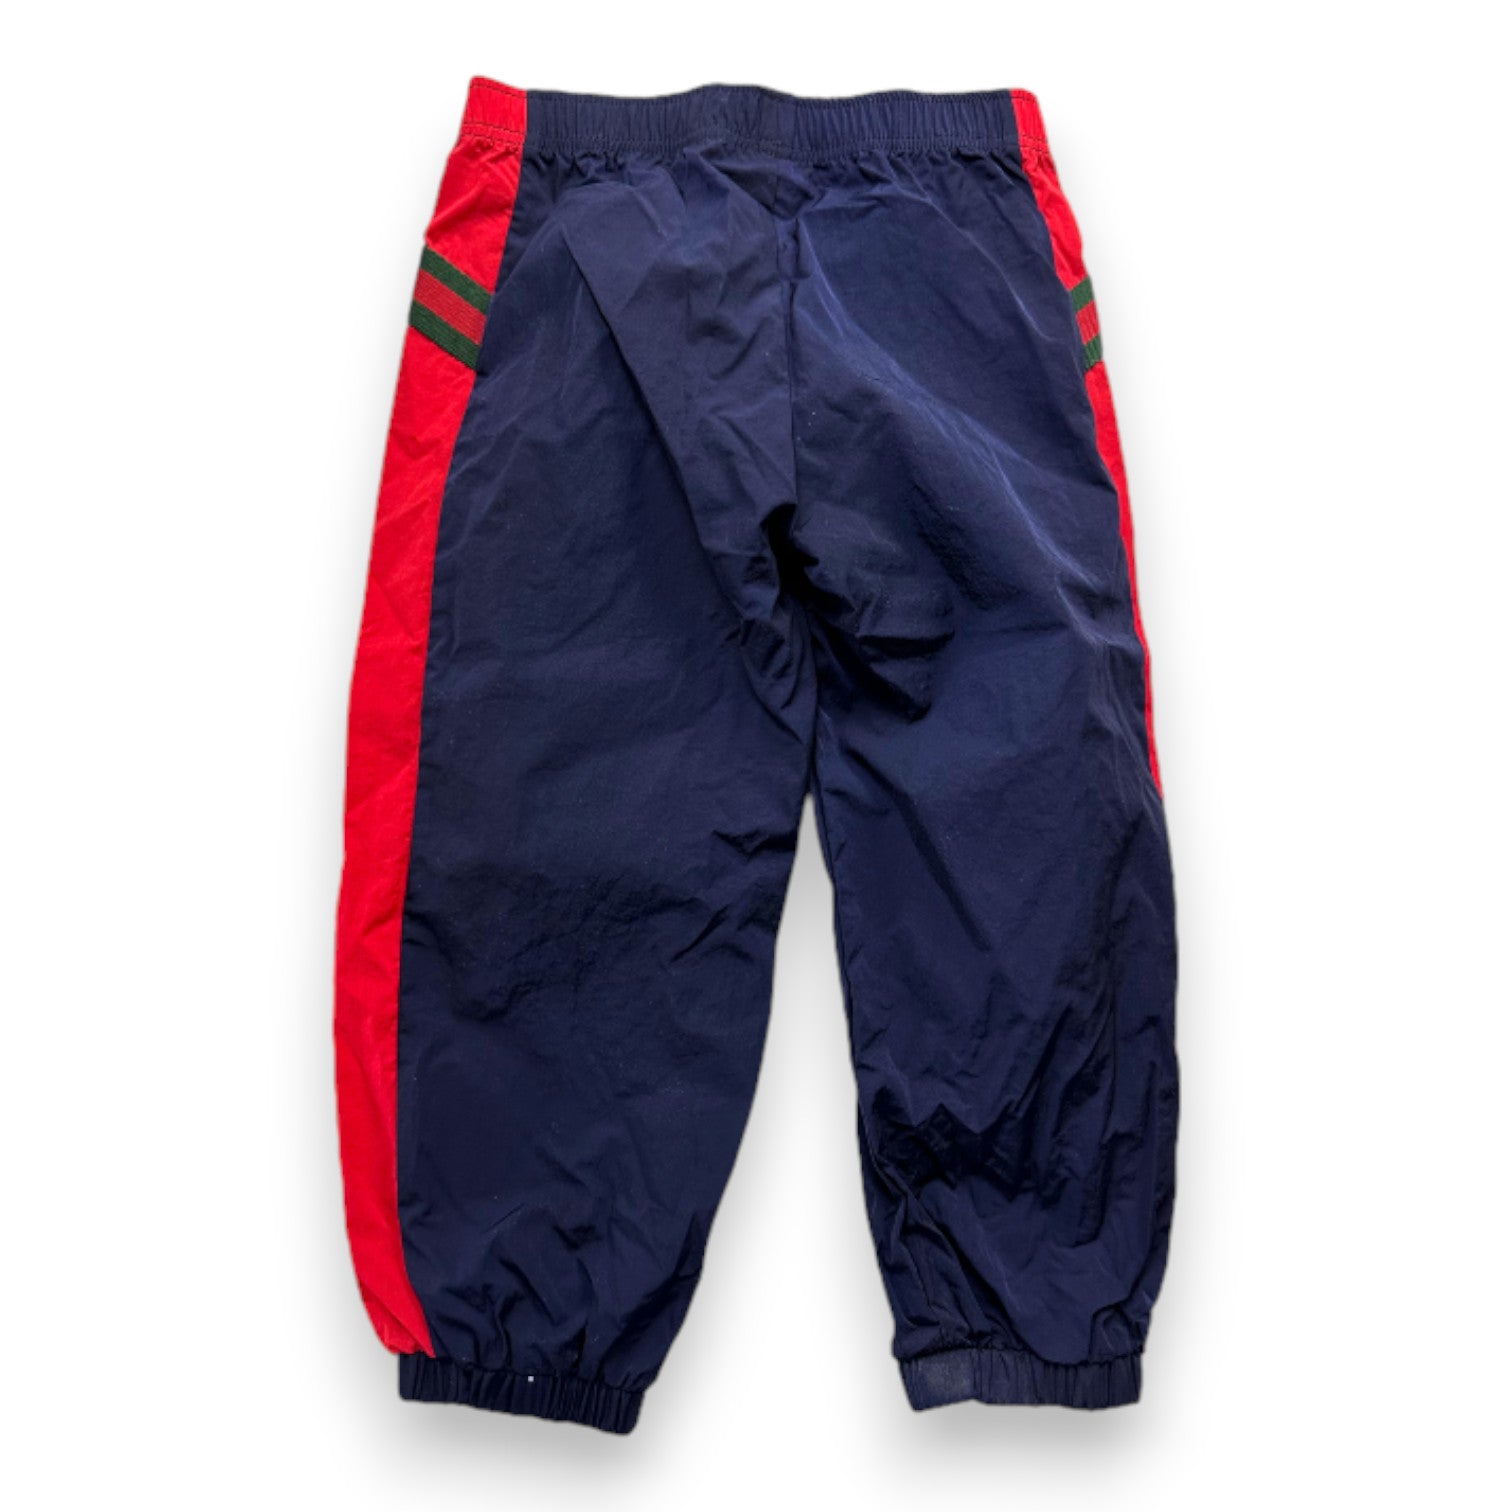 GUCCI - Pantalon de jogging bleu et rouge - 3 ans